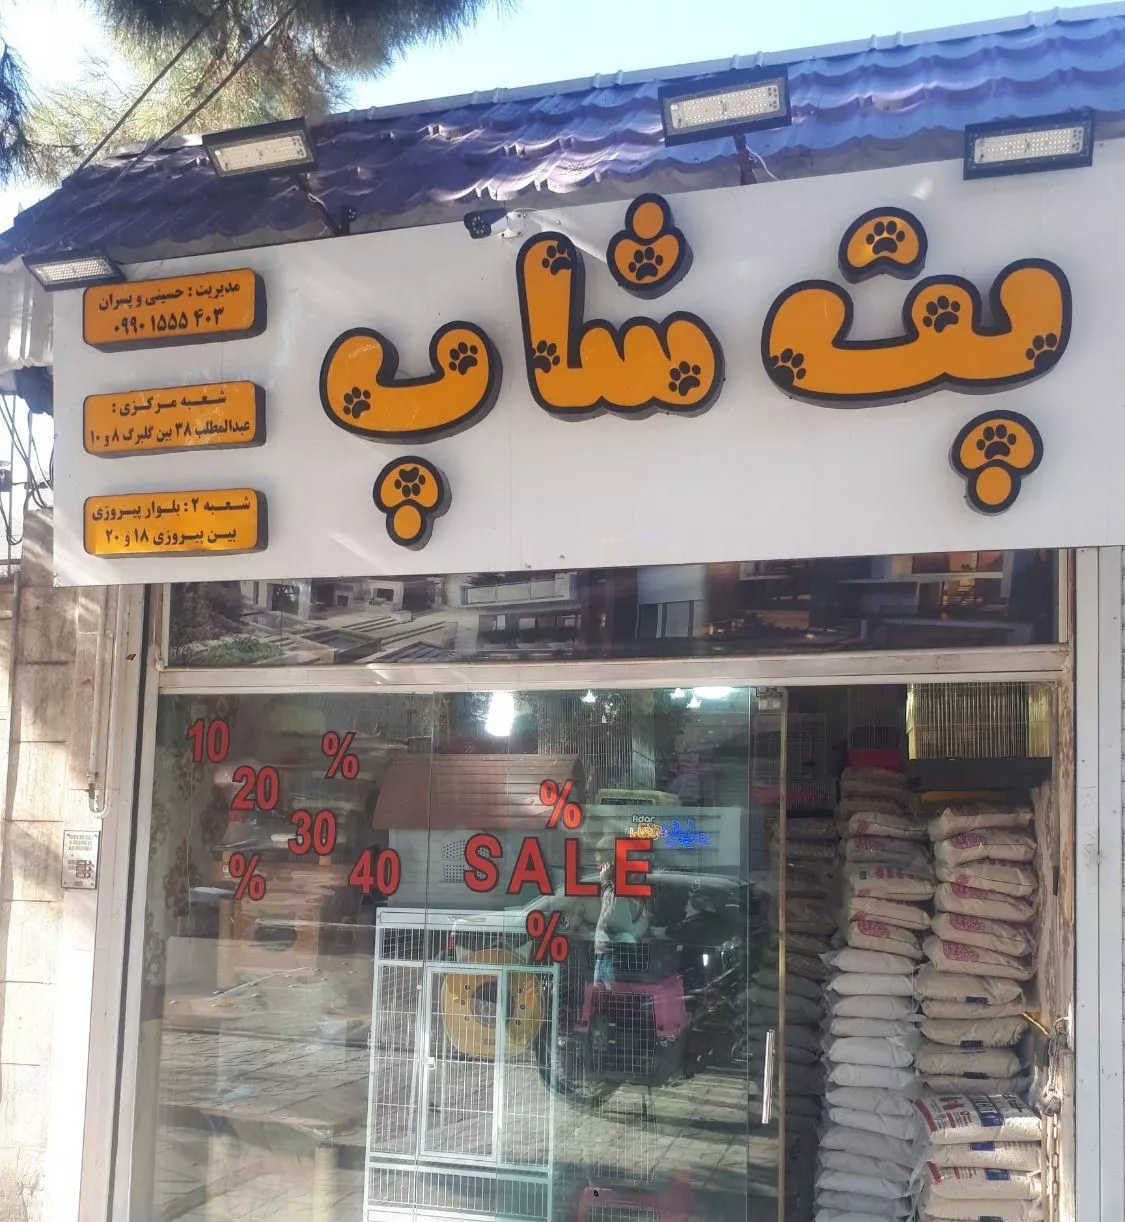 مغازه فروشی عبدلمطلب